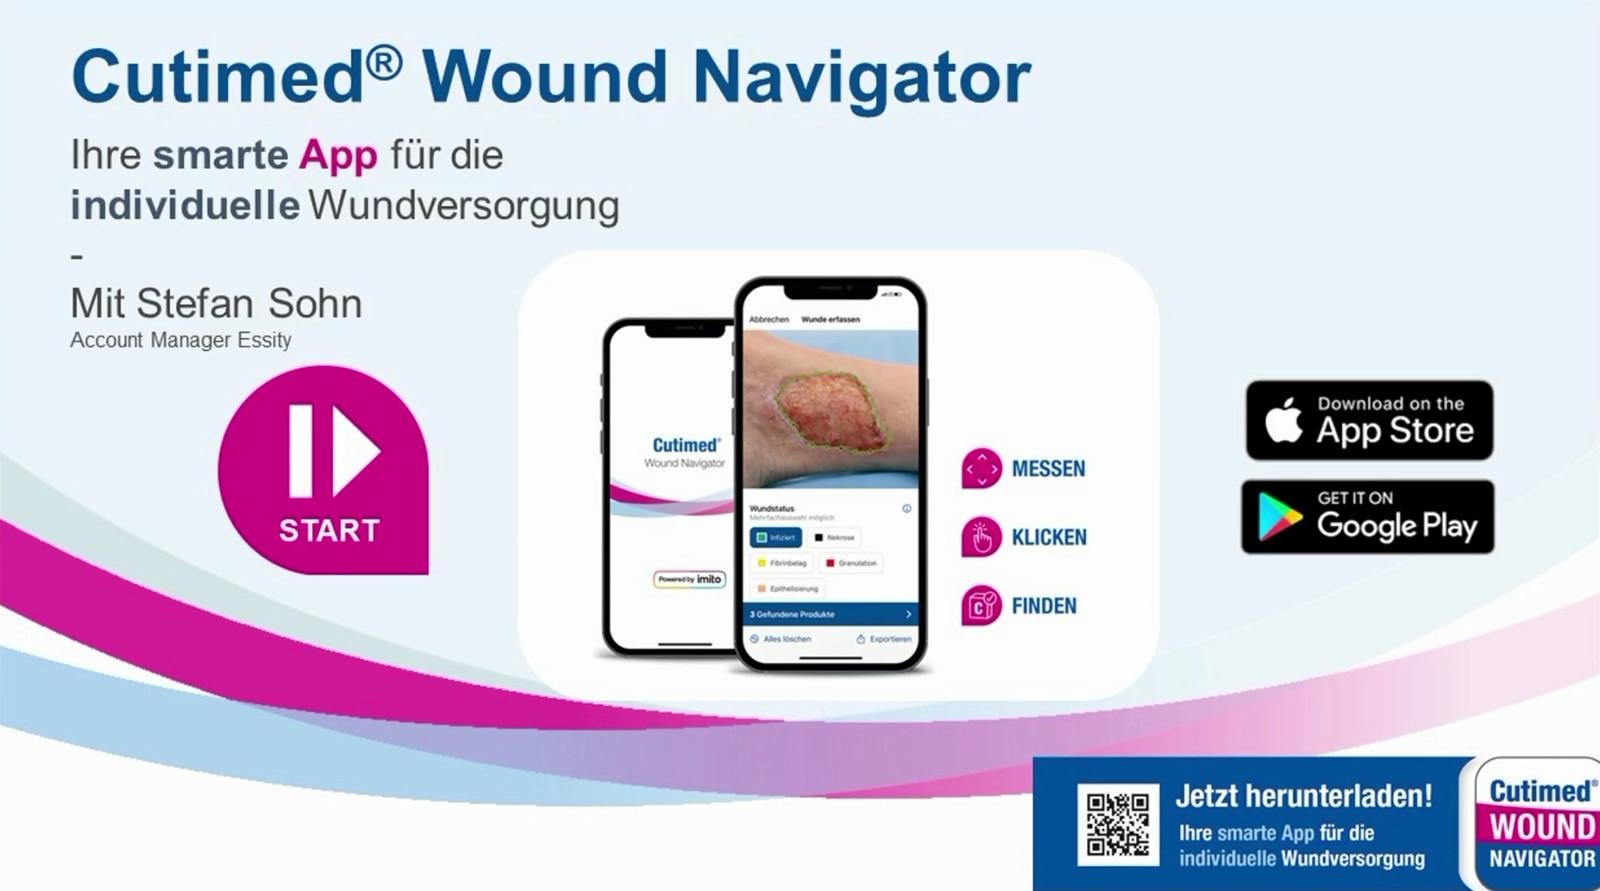 Vorteile mit der Cutimed Wound Navigator App in der Wundversorgung